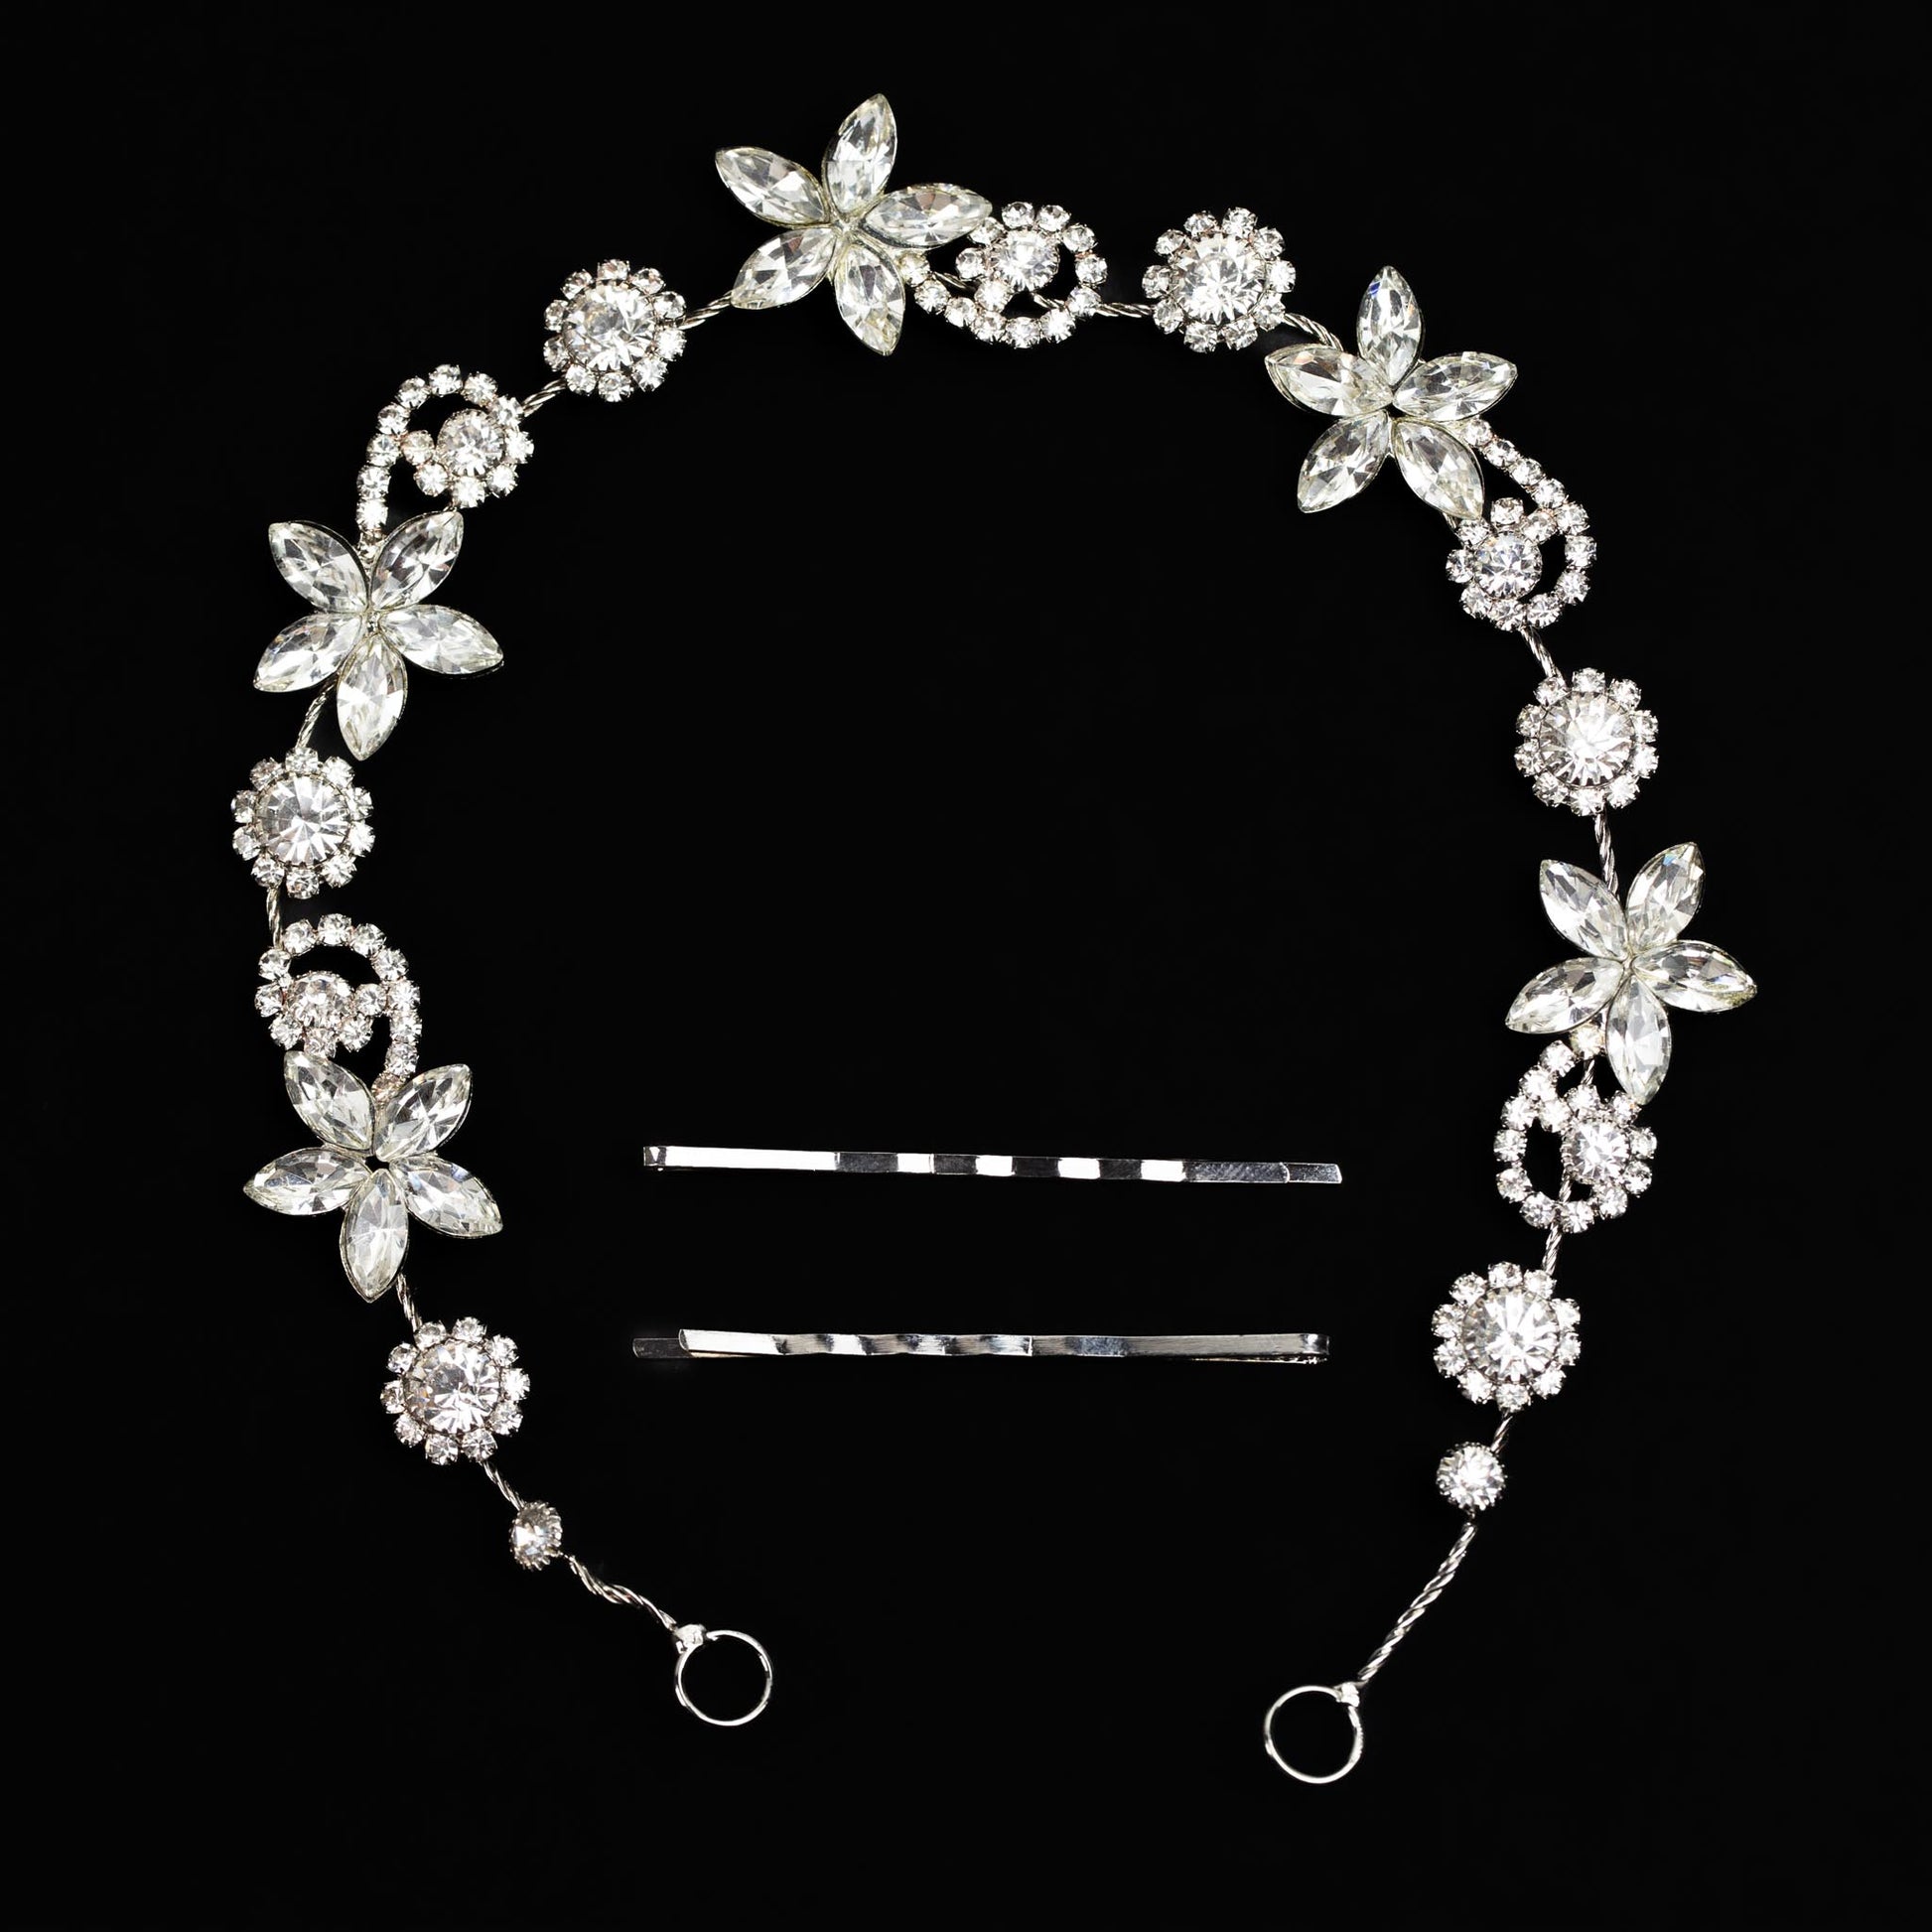 Diademă elegantă maleabilă cu strasuri, pietre, stele - Argintiu